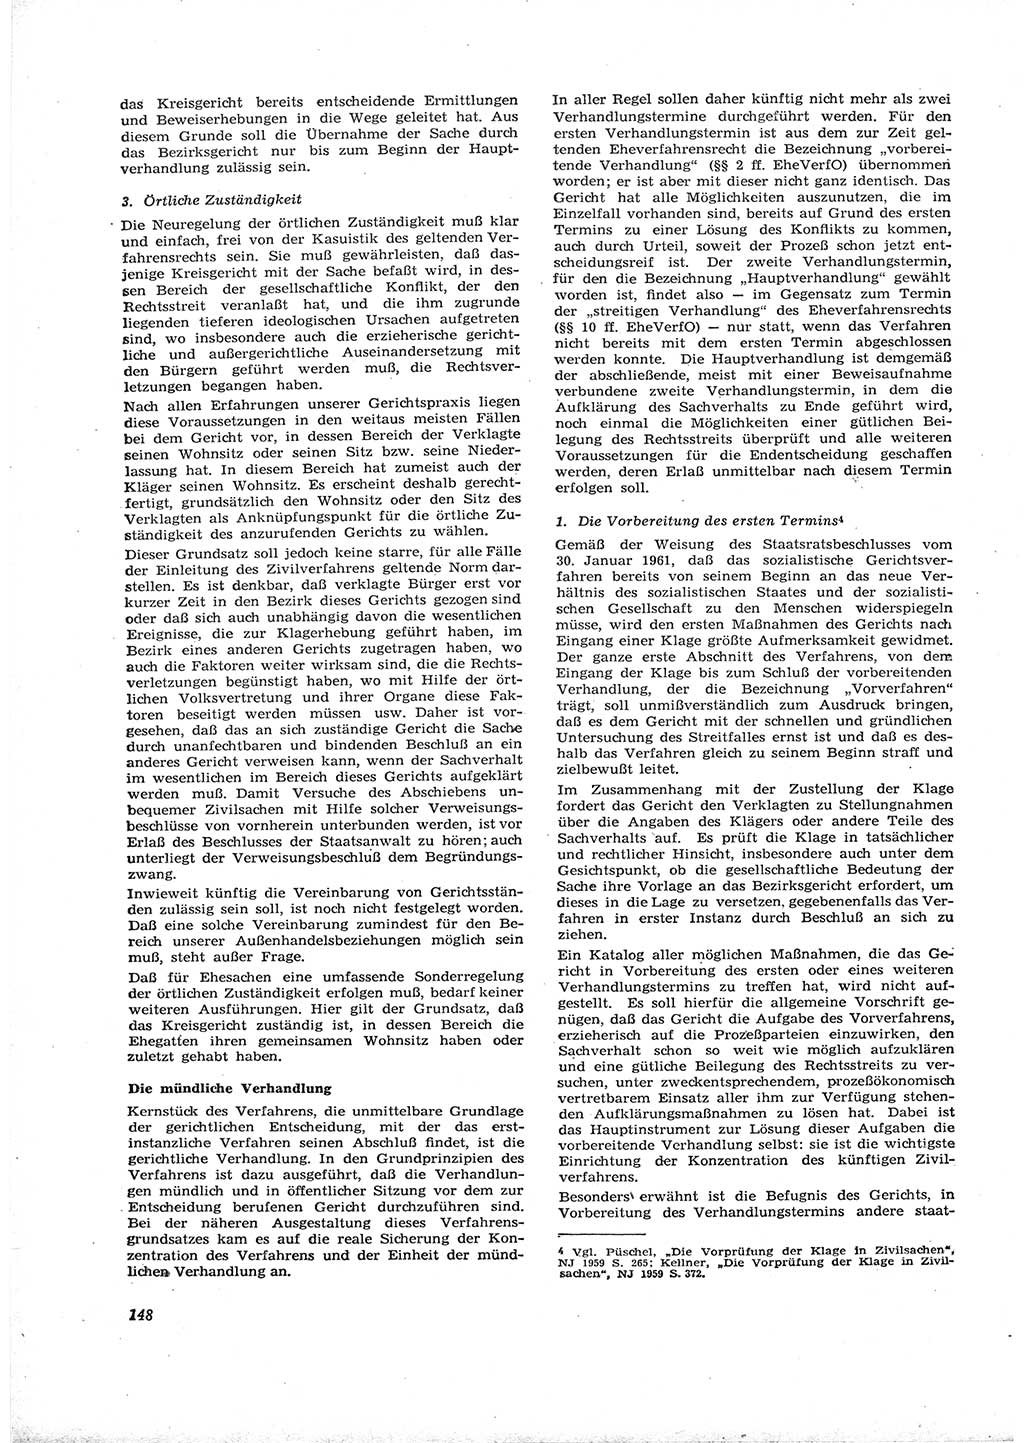 Neue Justiz (NJ), Zeitschrift für Recht und Rechtswissenschaft [Deutsche Demokratische Republik (DDR)], 16. Jahrgang 1962, Seite 148 (NJ DDR 1962, S. 148)